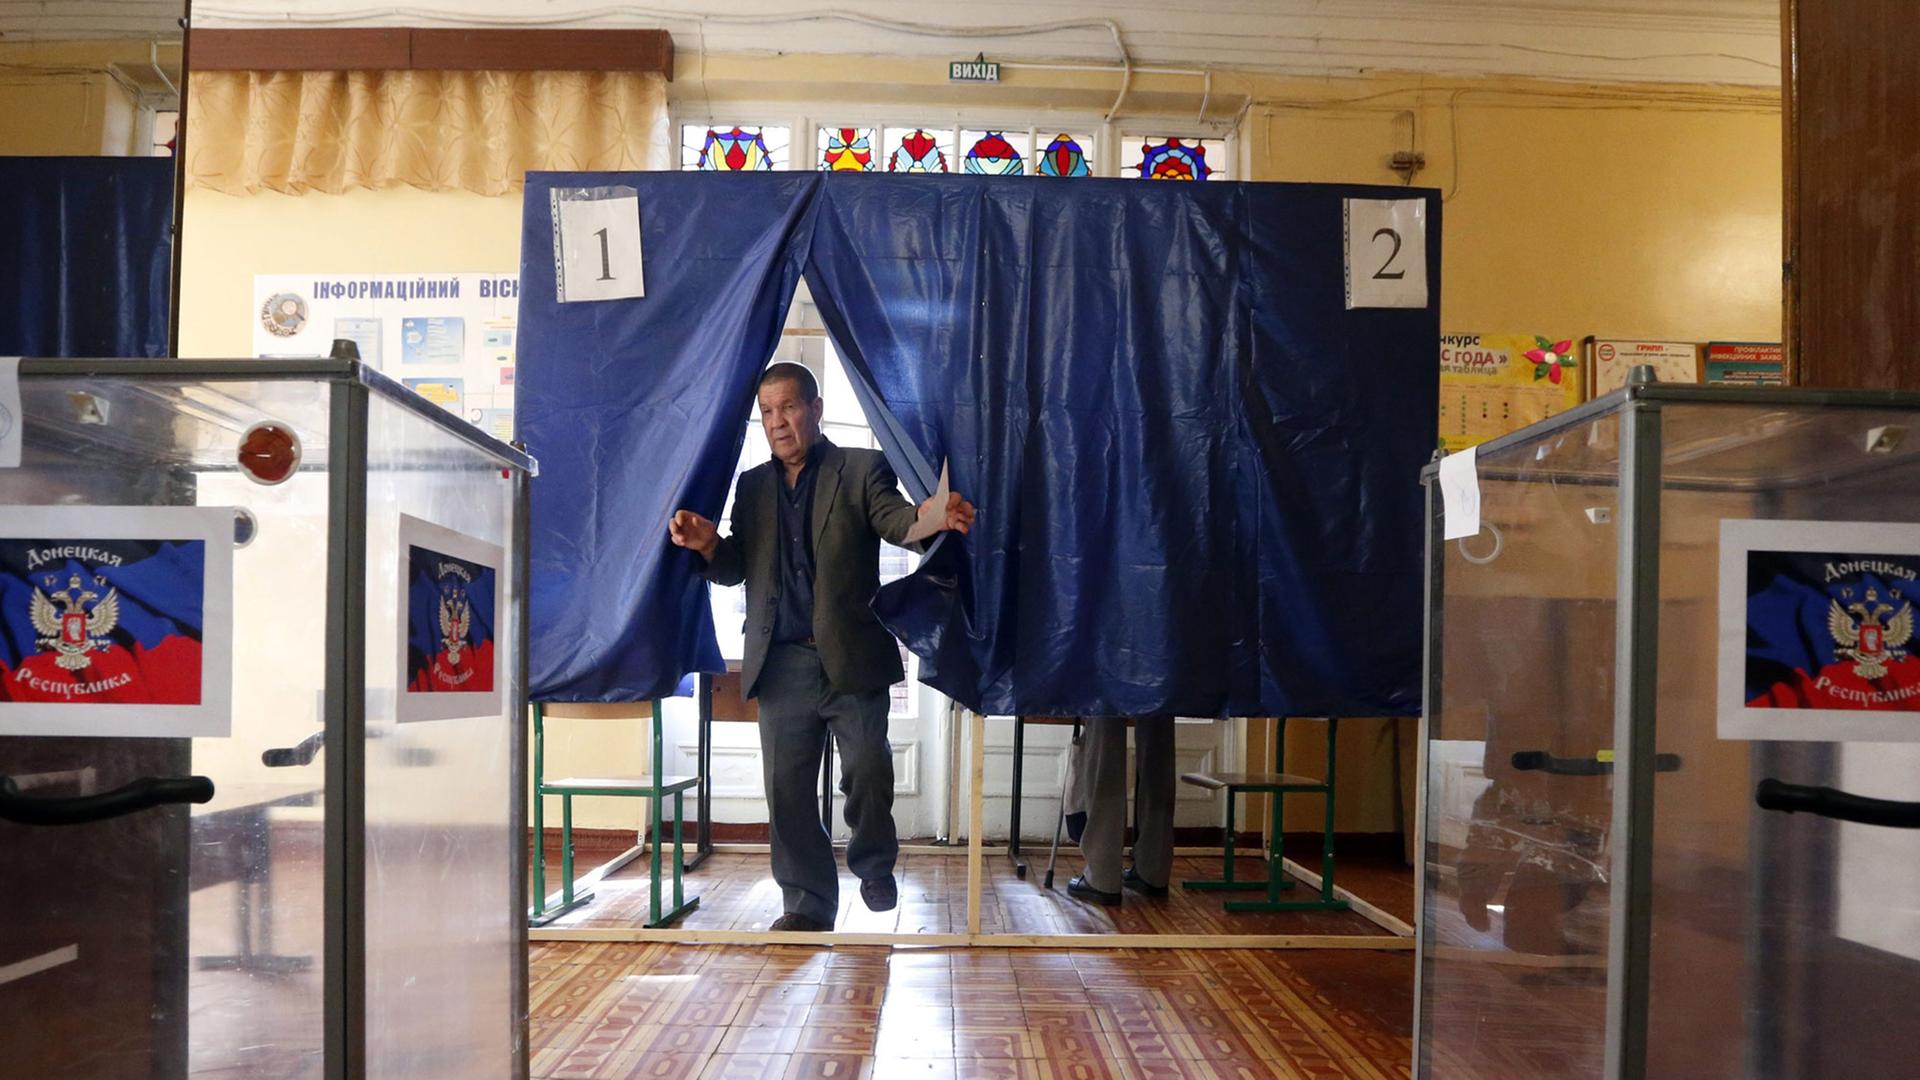 Ein Man steht zwischen zwei Wahlurnen.